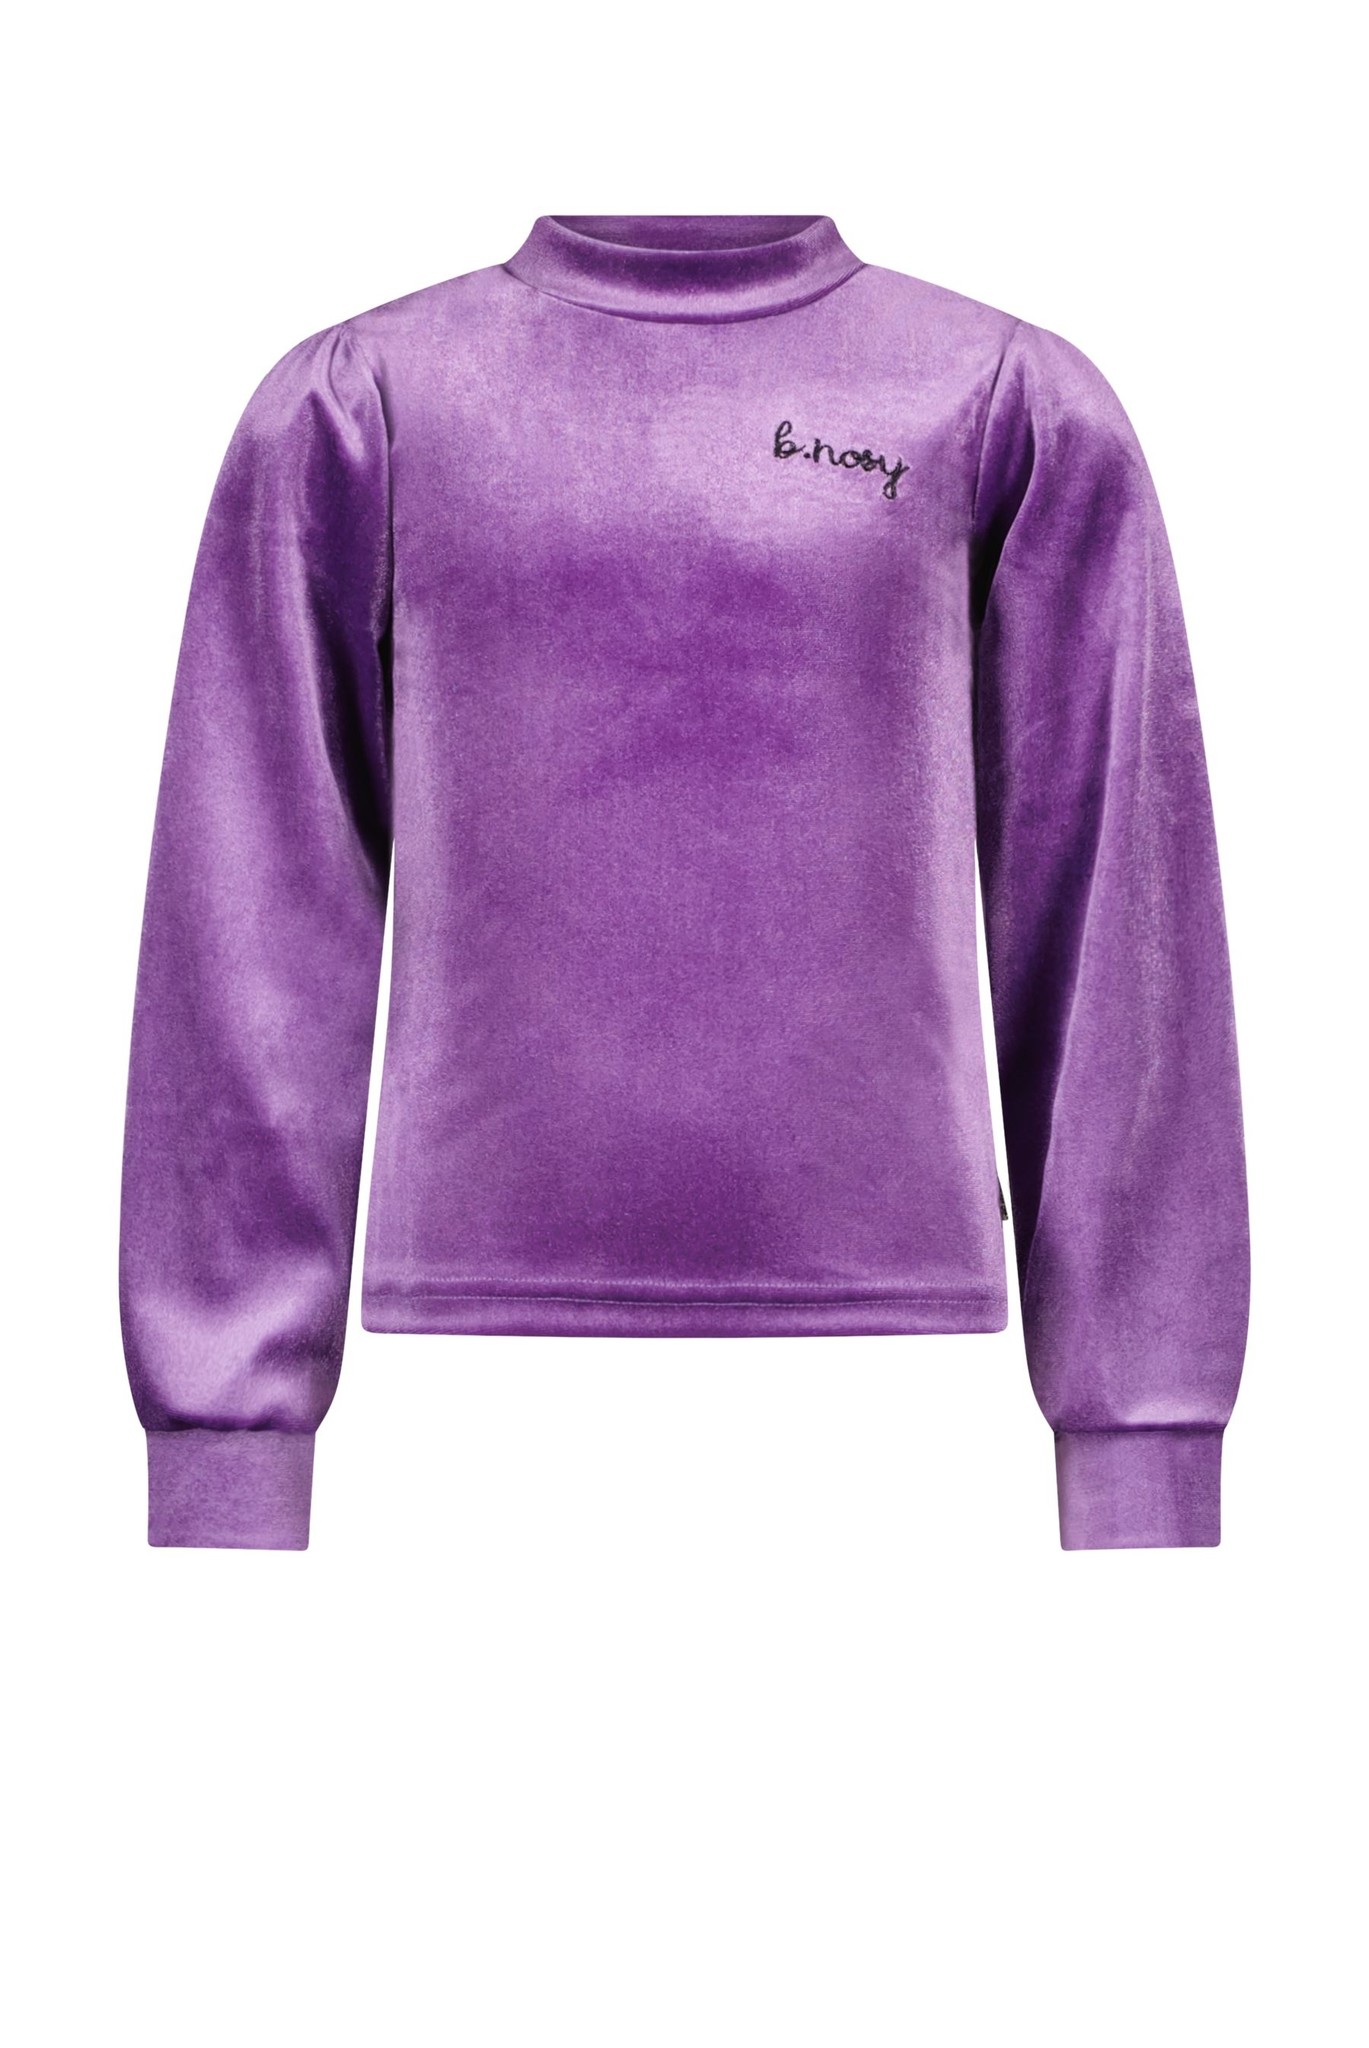 B.Nosy - Meisjes shirt - Purple - Maat 104